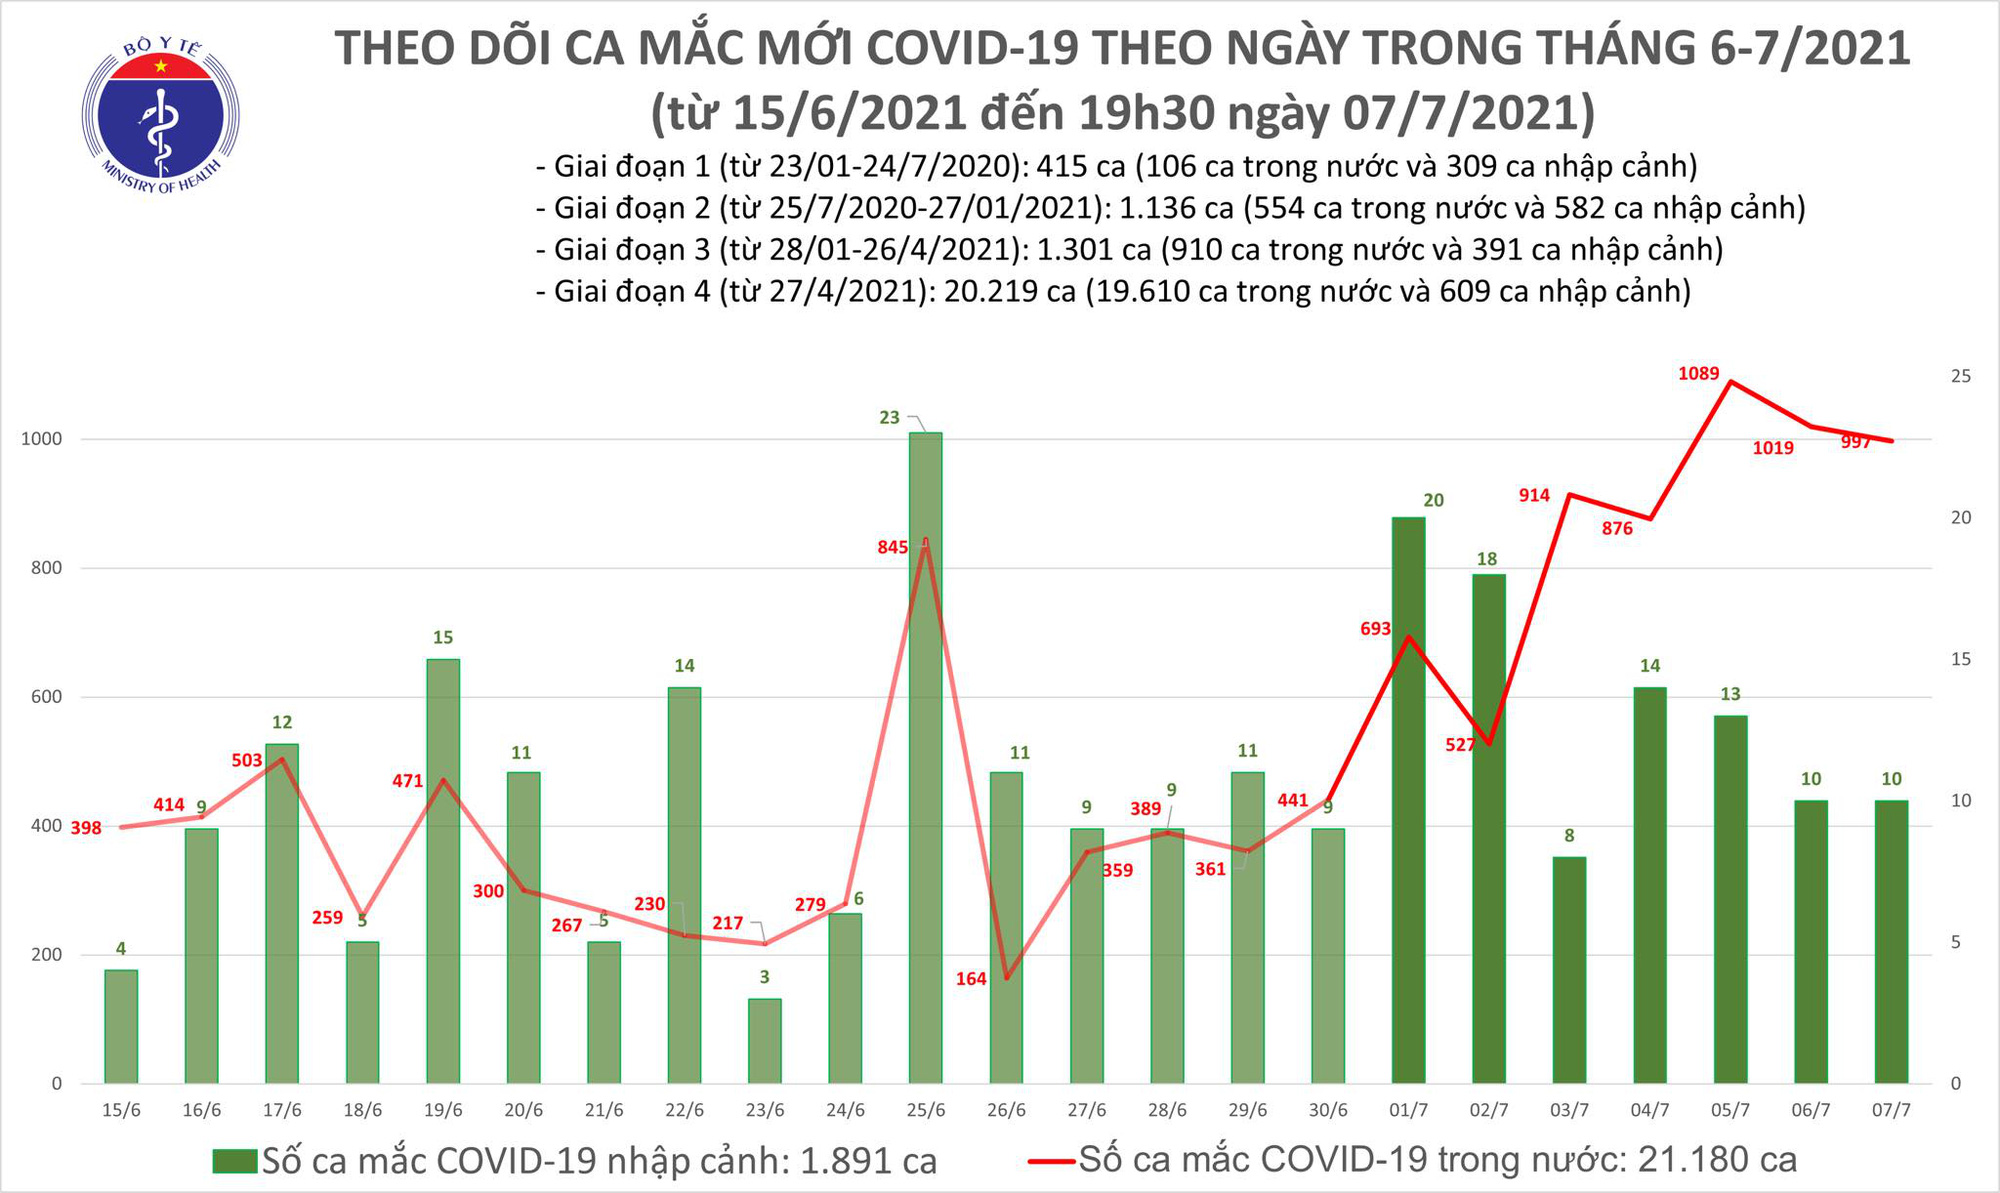 Chiều 7/7, thêm 330 ca mắc COVID-19, nâng tổng số ca trong ngày lên 1.007 - Ảnh 1.